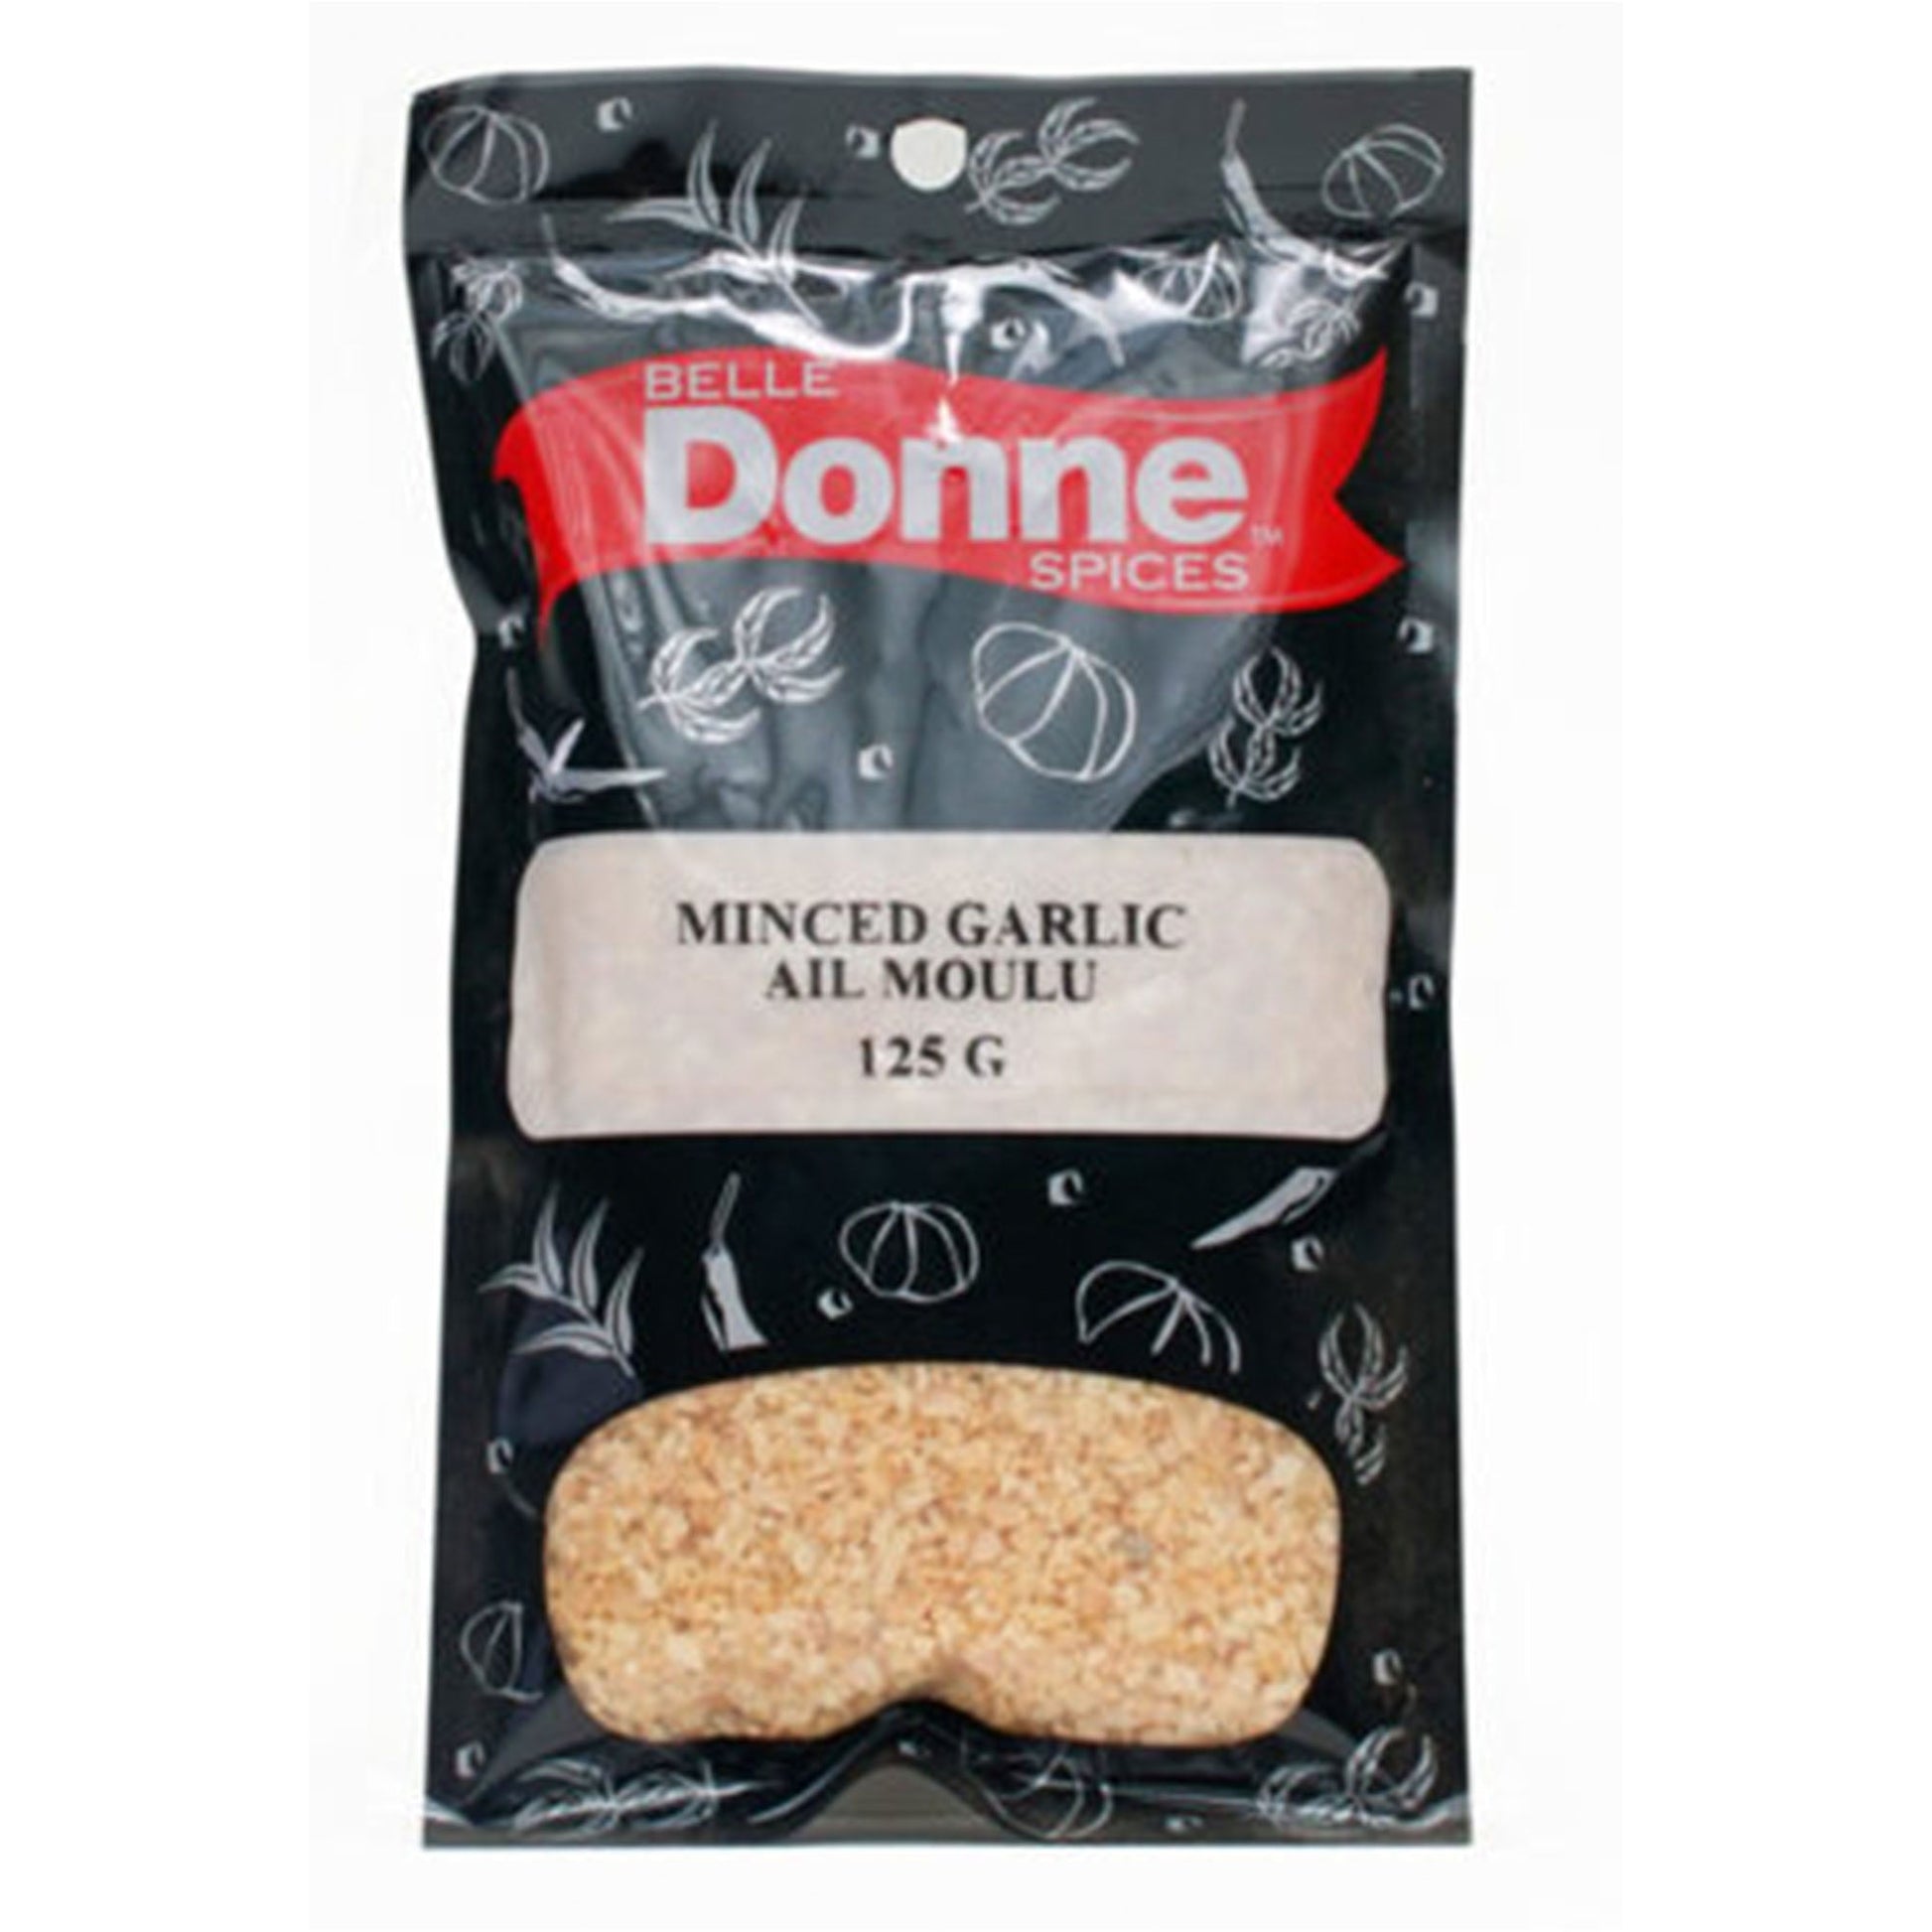 Donne Minced Garlic 125G